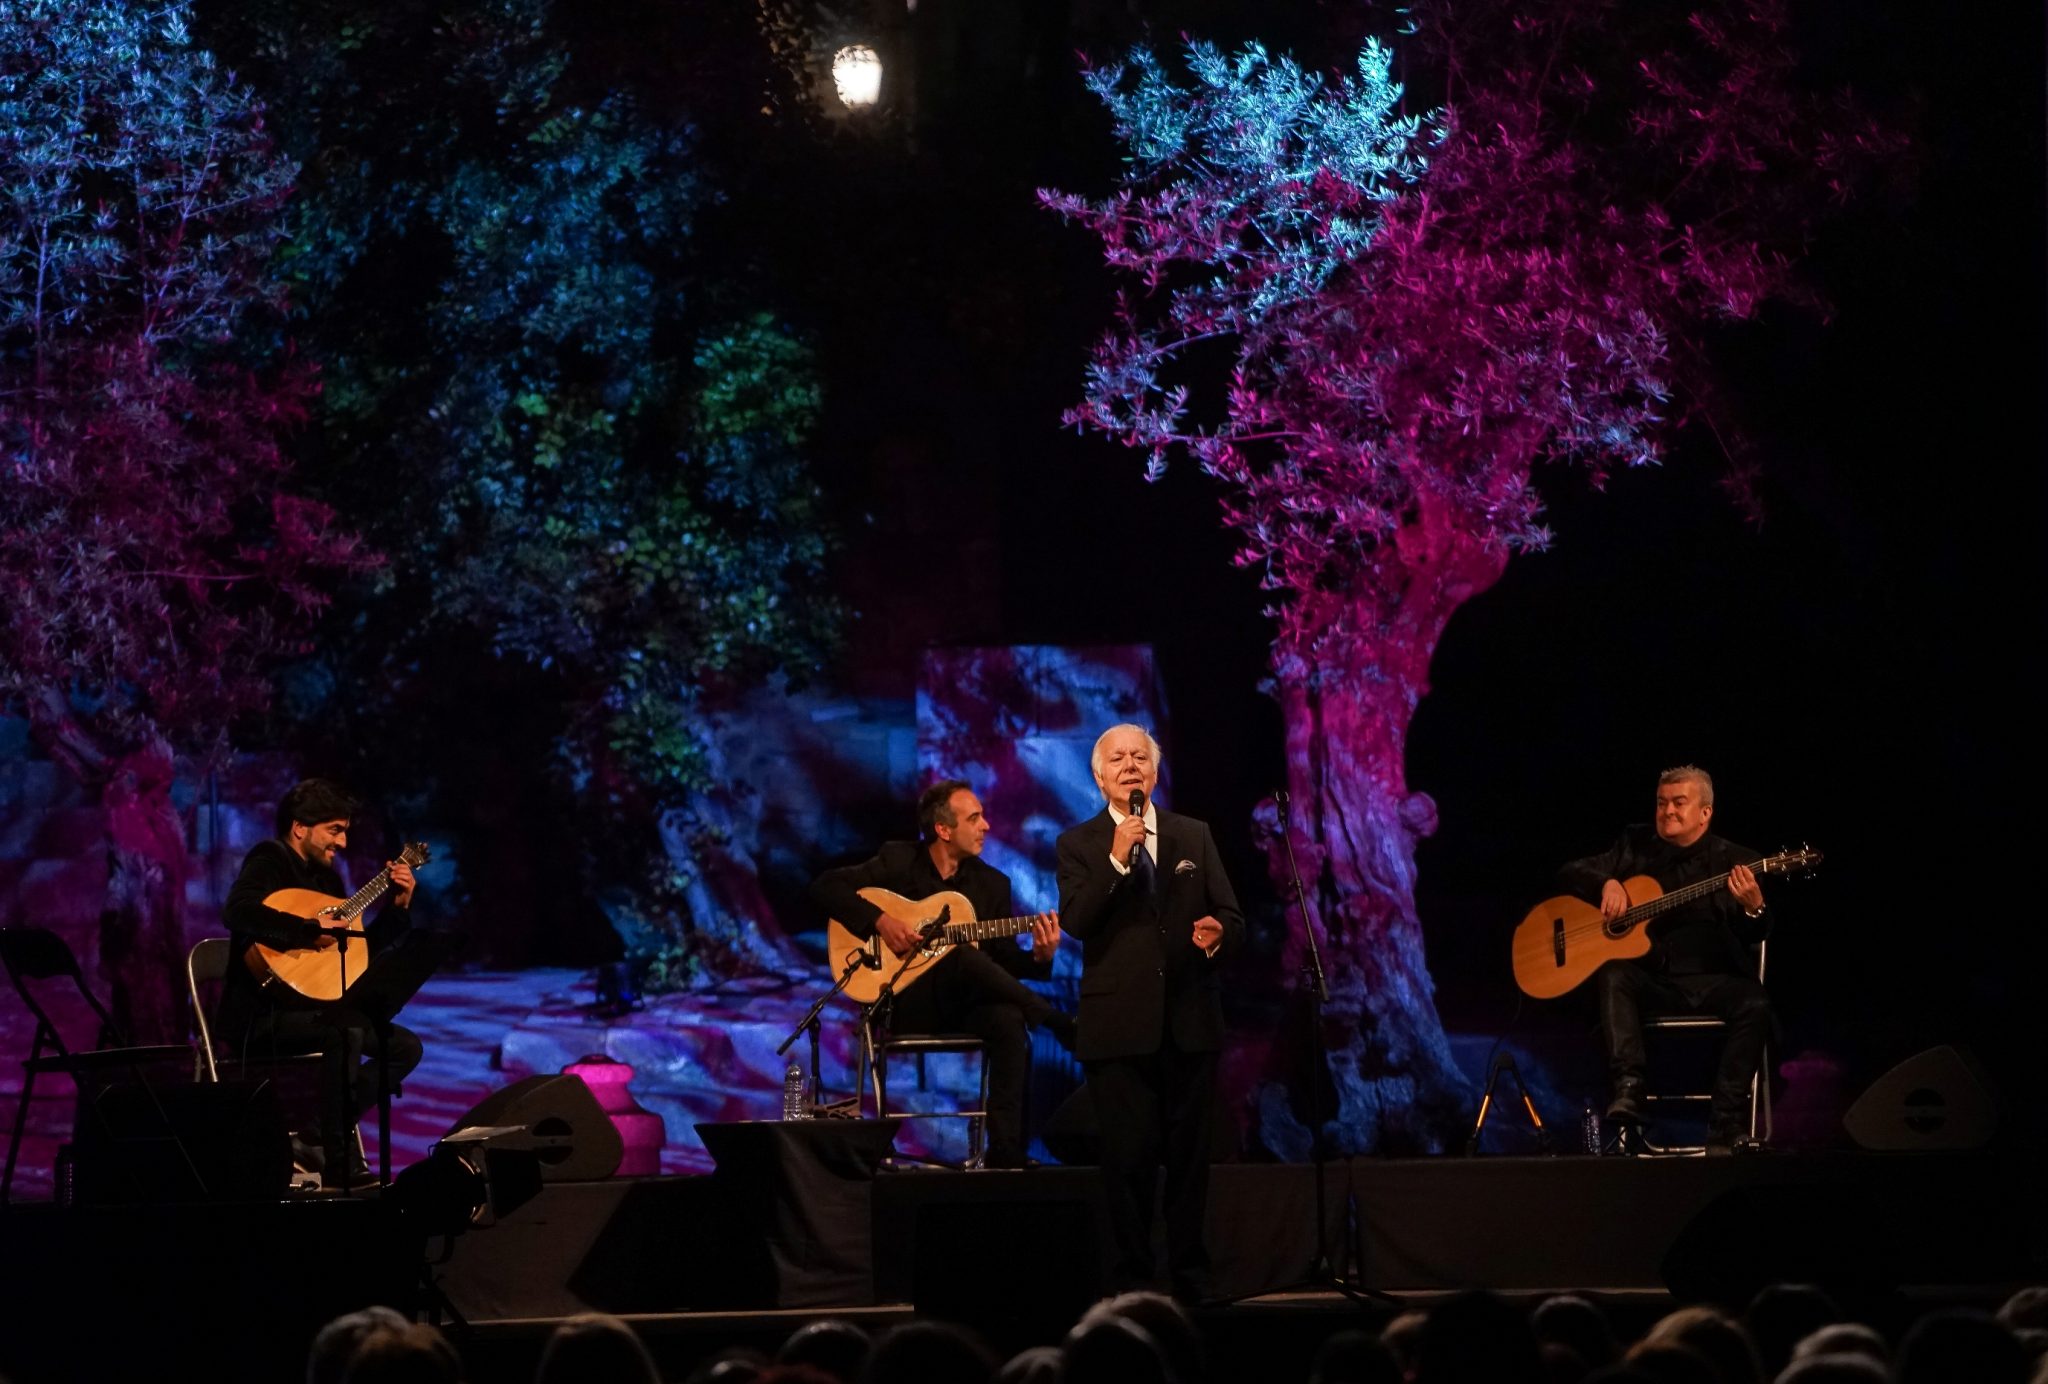 Vista do palco do concerto de Carlos do Carmo, com o fadista ao centro de pé rodeado pelos músicos à esquerda e à direita.